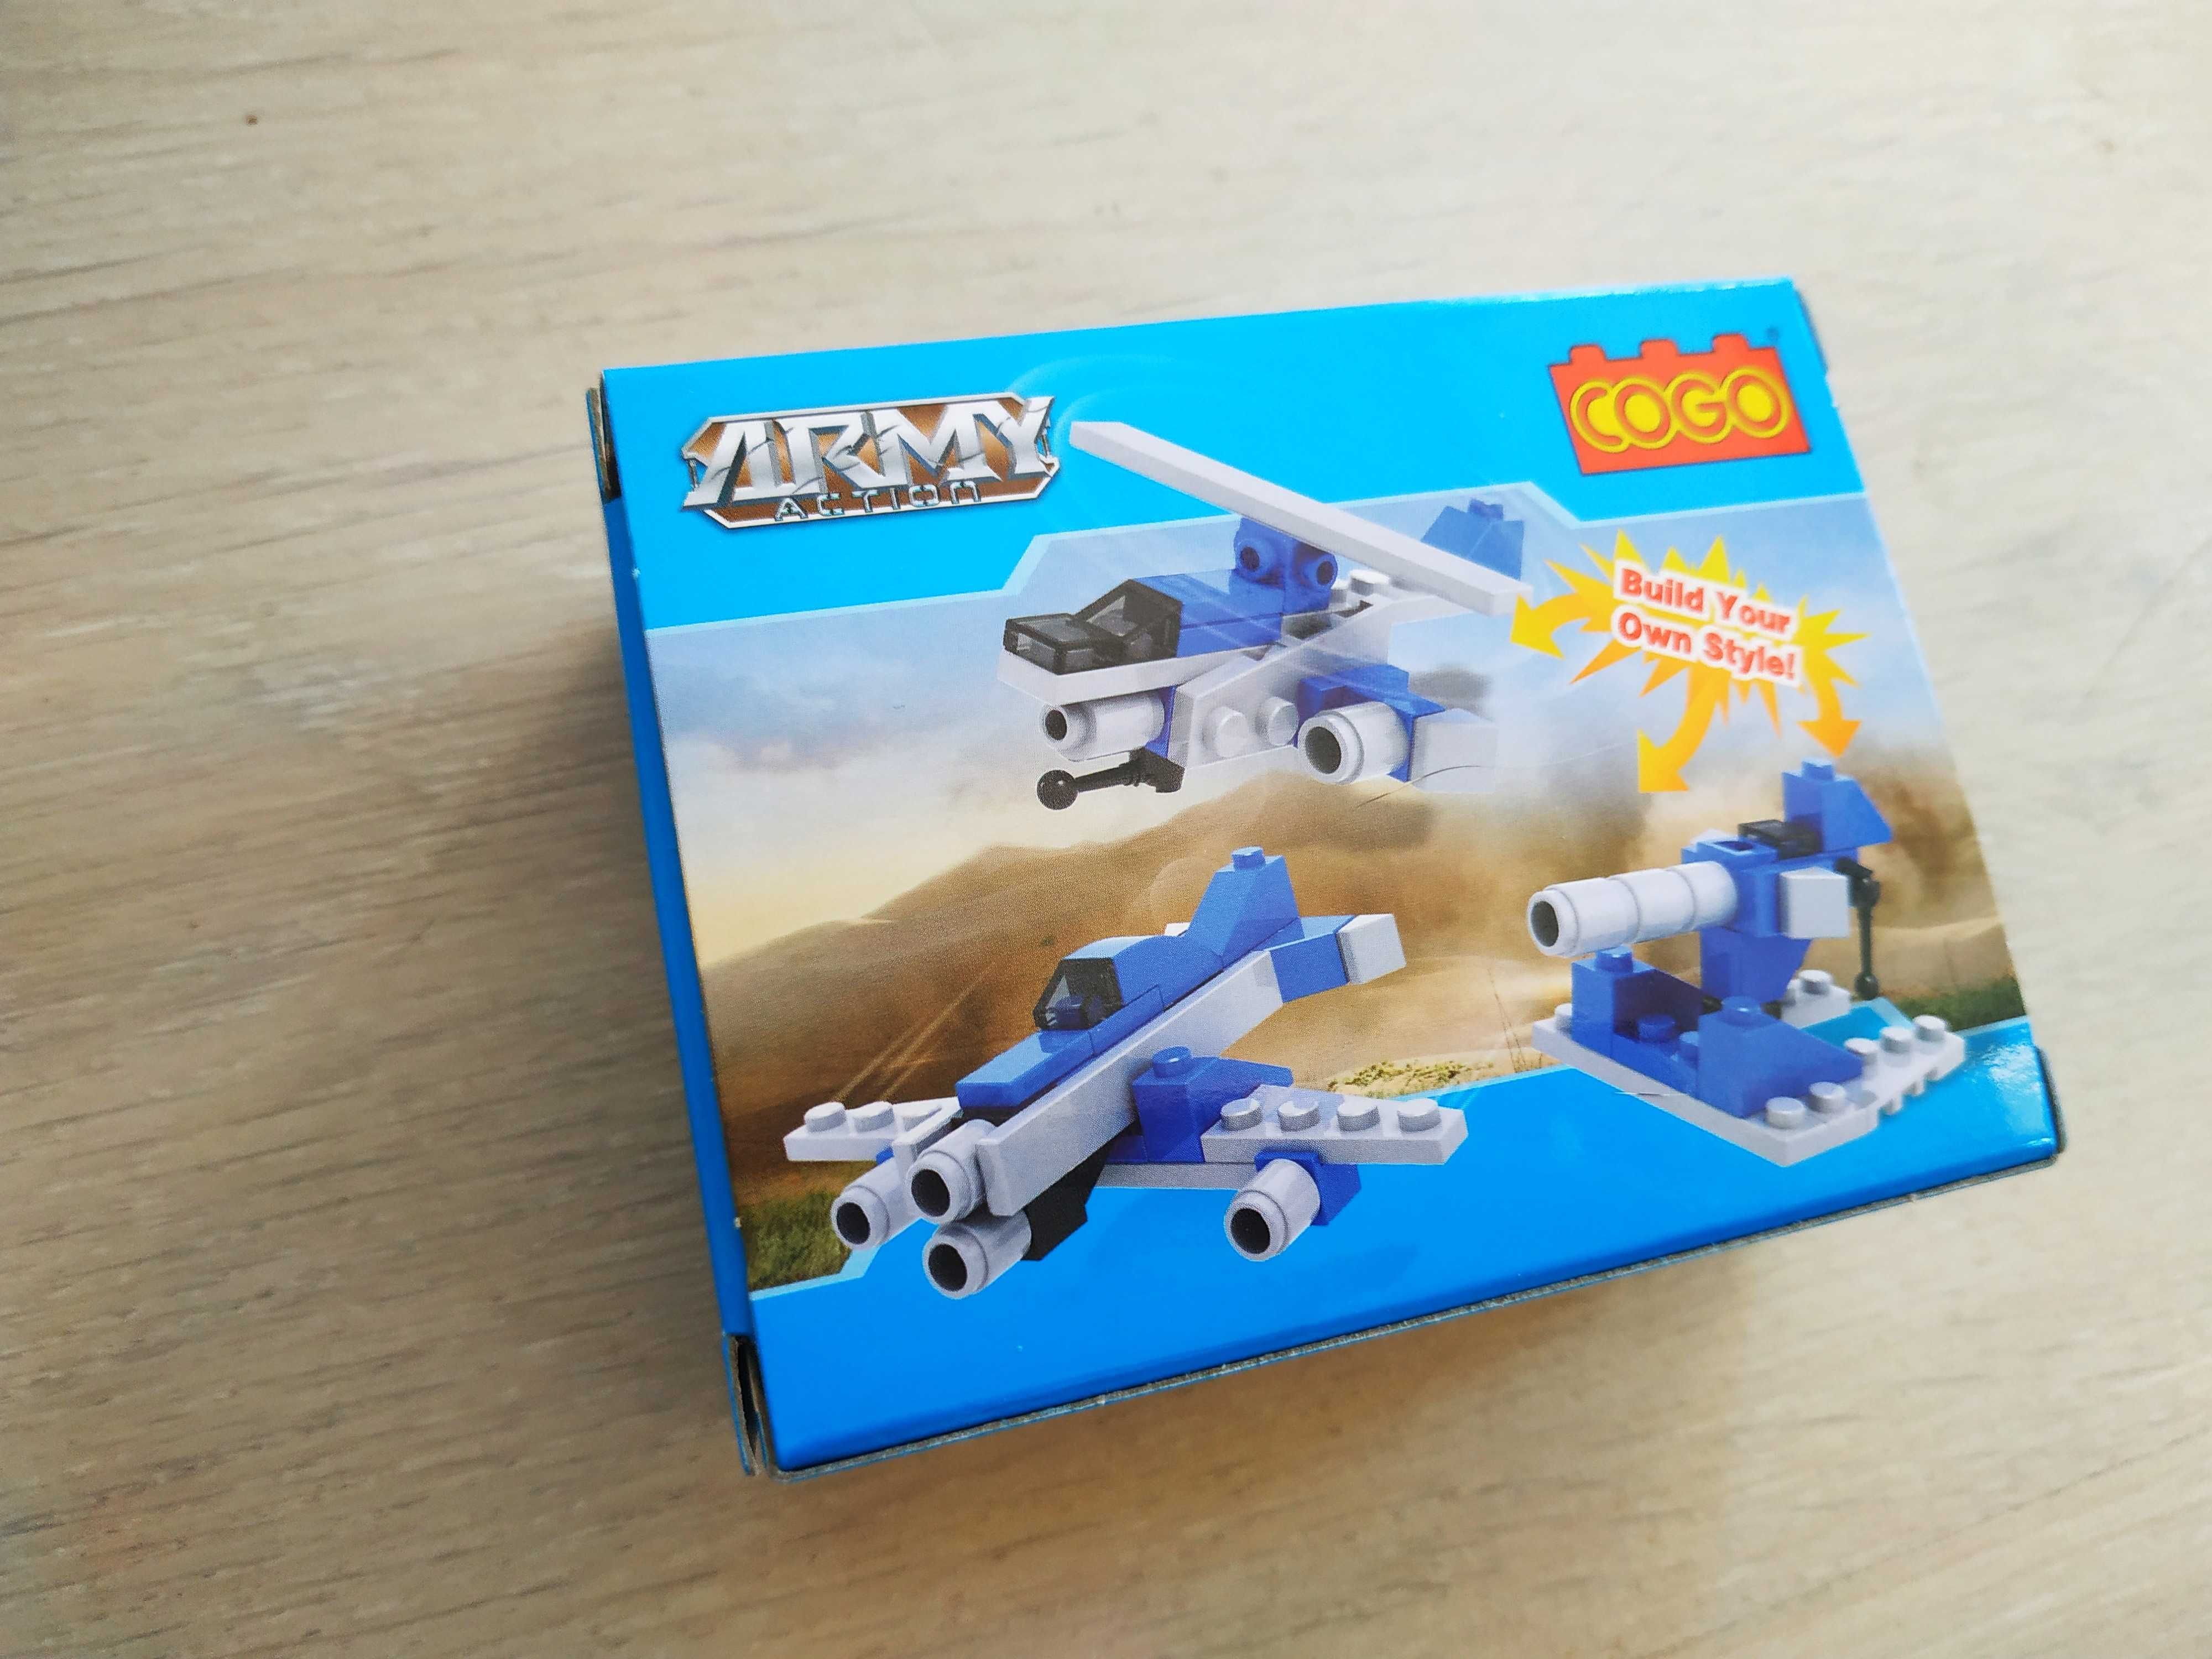 Klocki LEGO COGO samolocik z serii Army Action 35 elementów